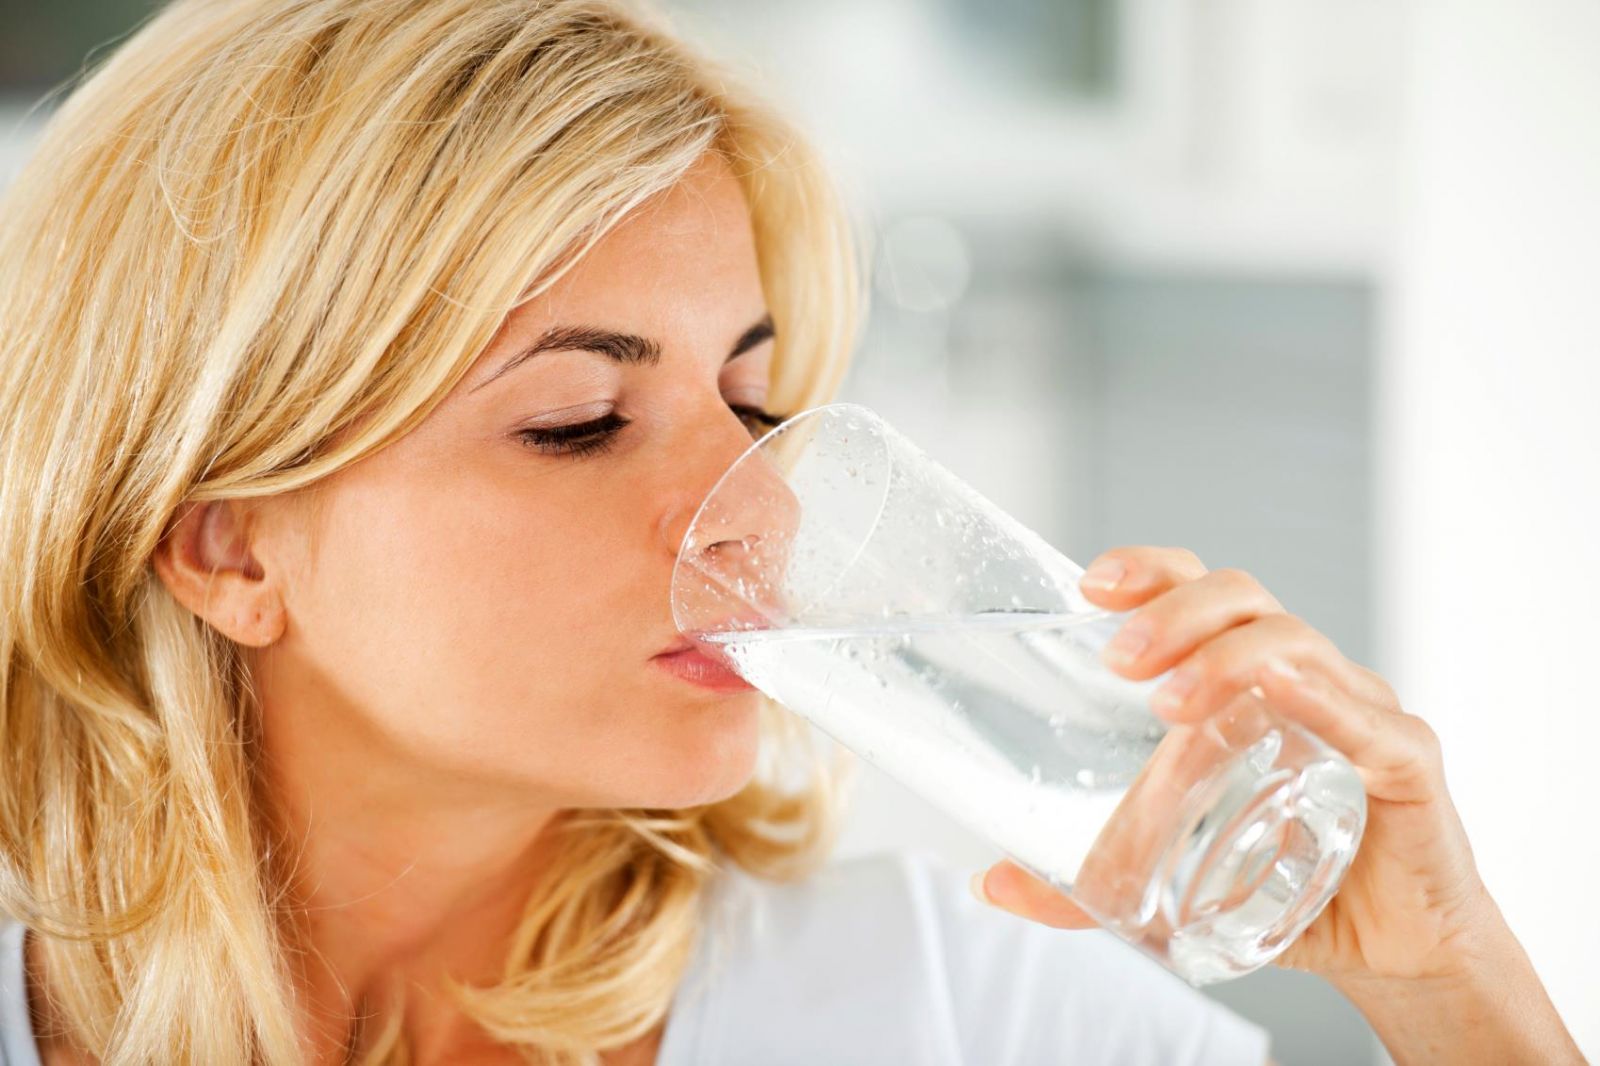 uống nhiều nước cũng giảm cân